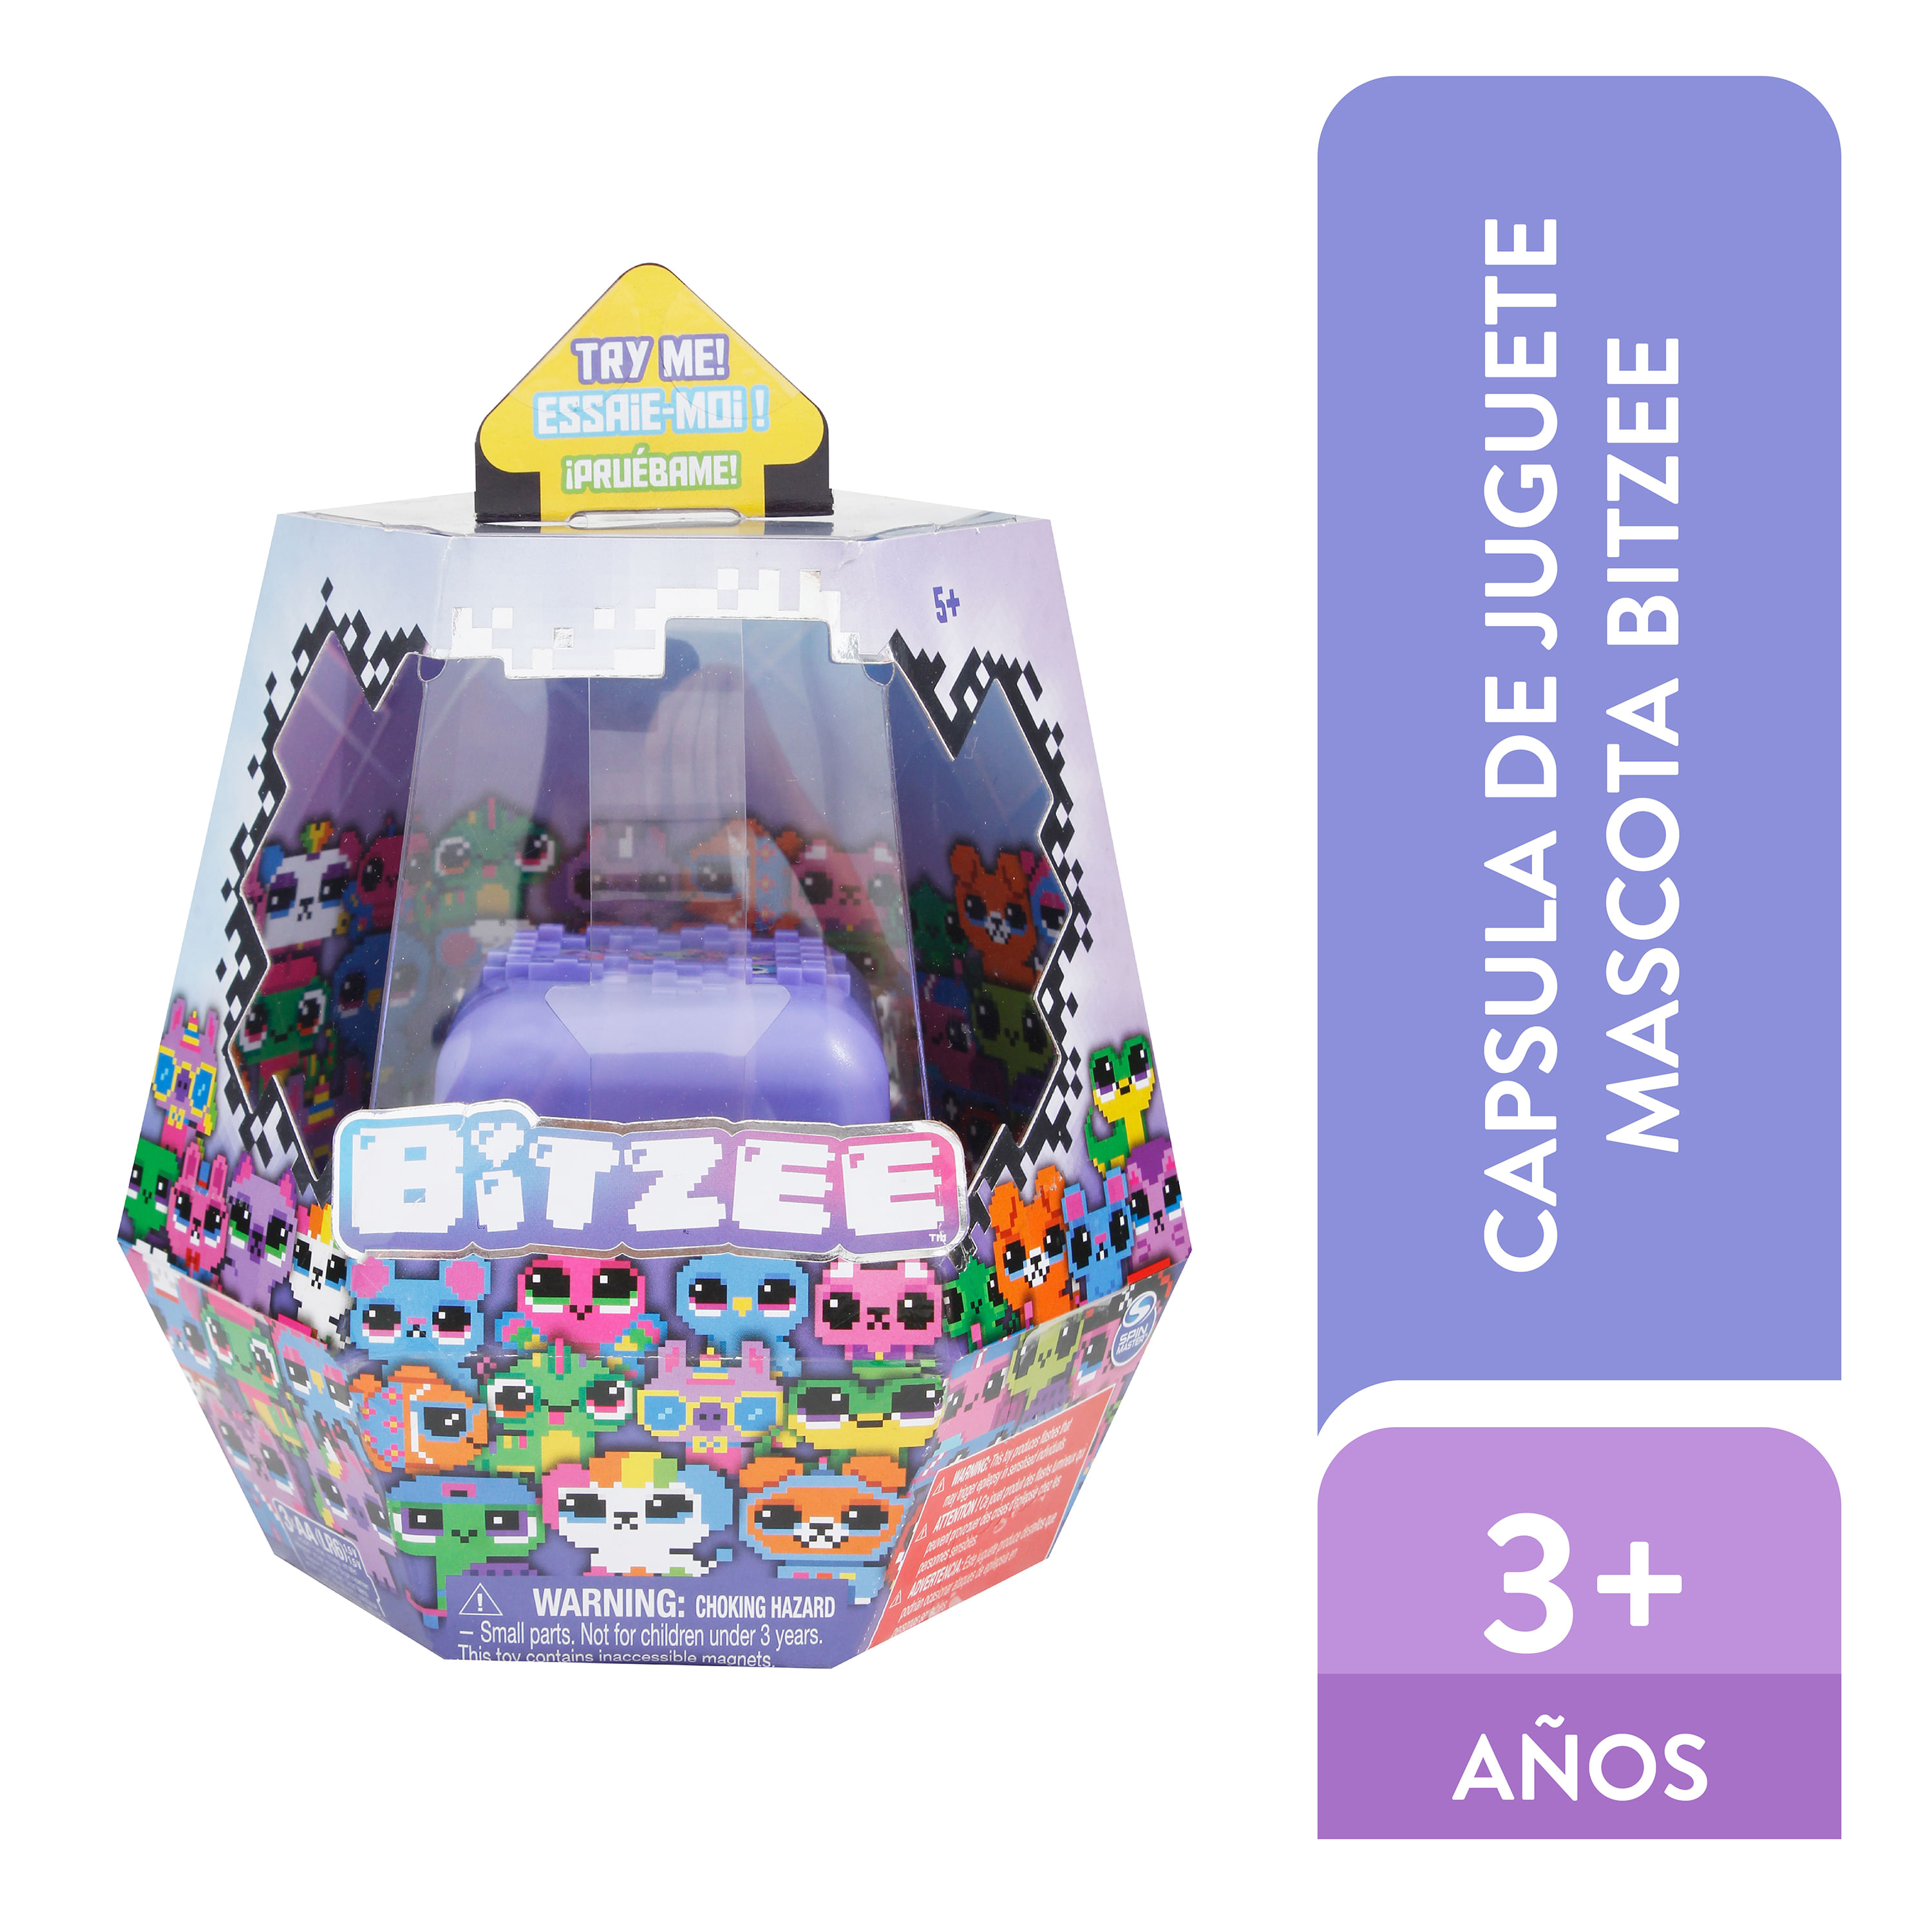 Betzee la nueva mascota digital!🐶💖 Precio: Q499 🧸Más juguetes aquí:  chiviri4ta.shop 💳Hasta 10 cuotas con tarjeta de crédito 📦Envíos a…